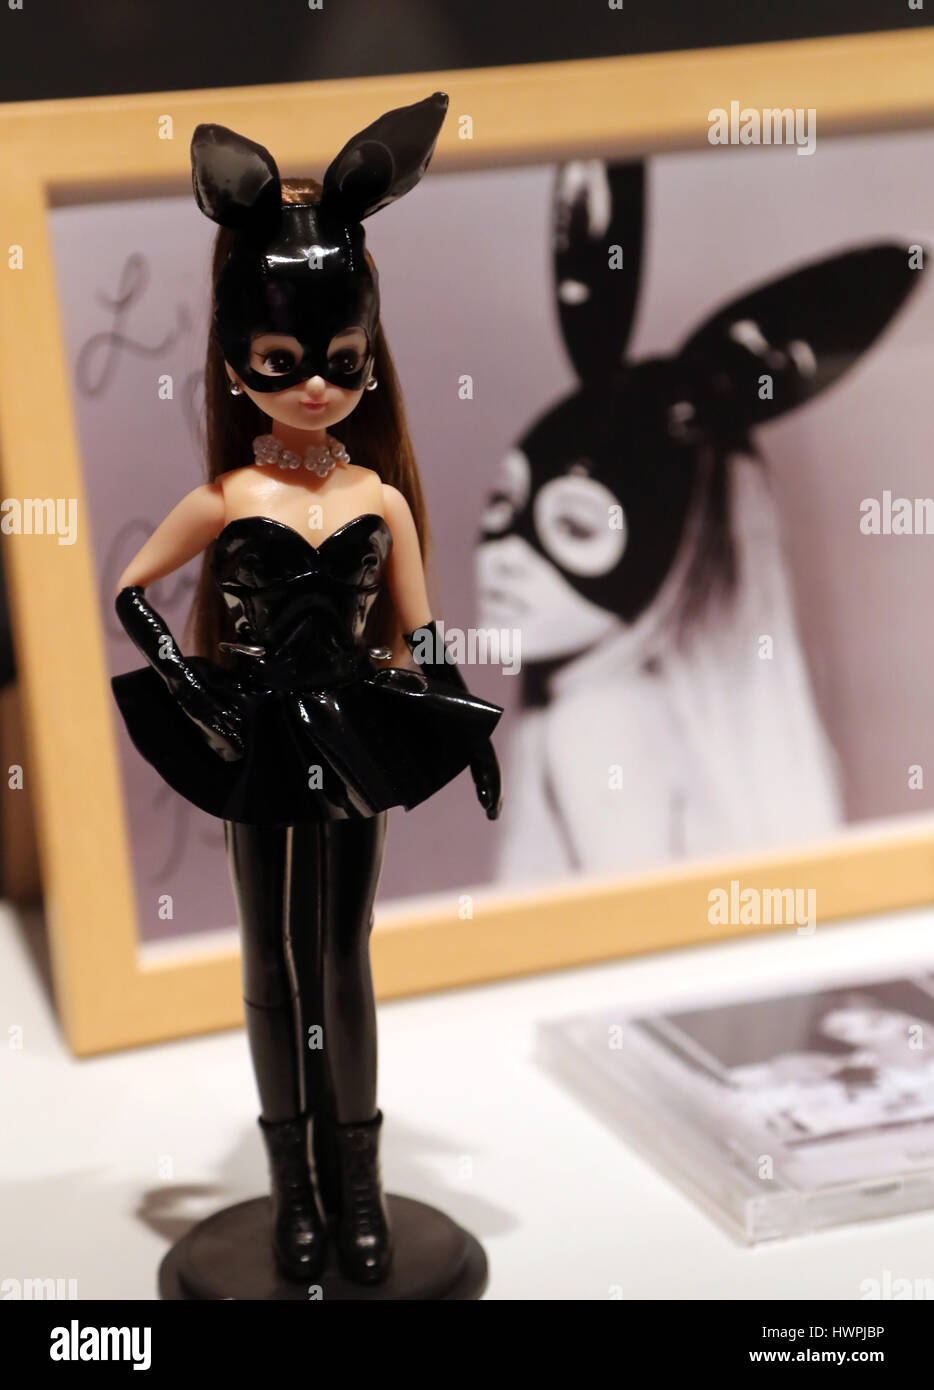 Tokyo, Giappone. 22 Mar, 2017. Un Licca-chan bambola modello di  collaborazione con la cantante americana Ariana Grande viene visualizzato  per il Licca-chan bambole mostra per festeggiare la bambola il  cinquantesimo compleanno presso